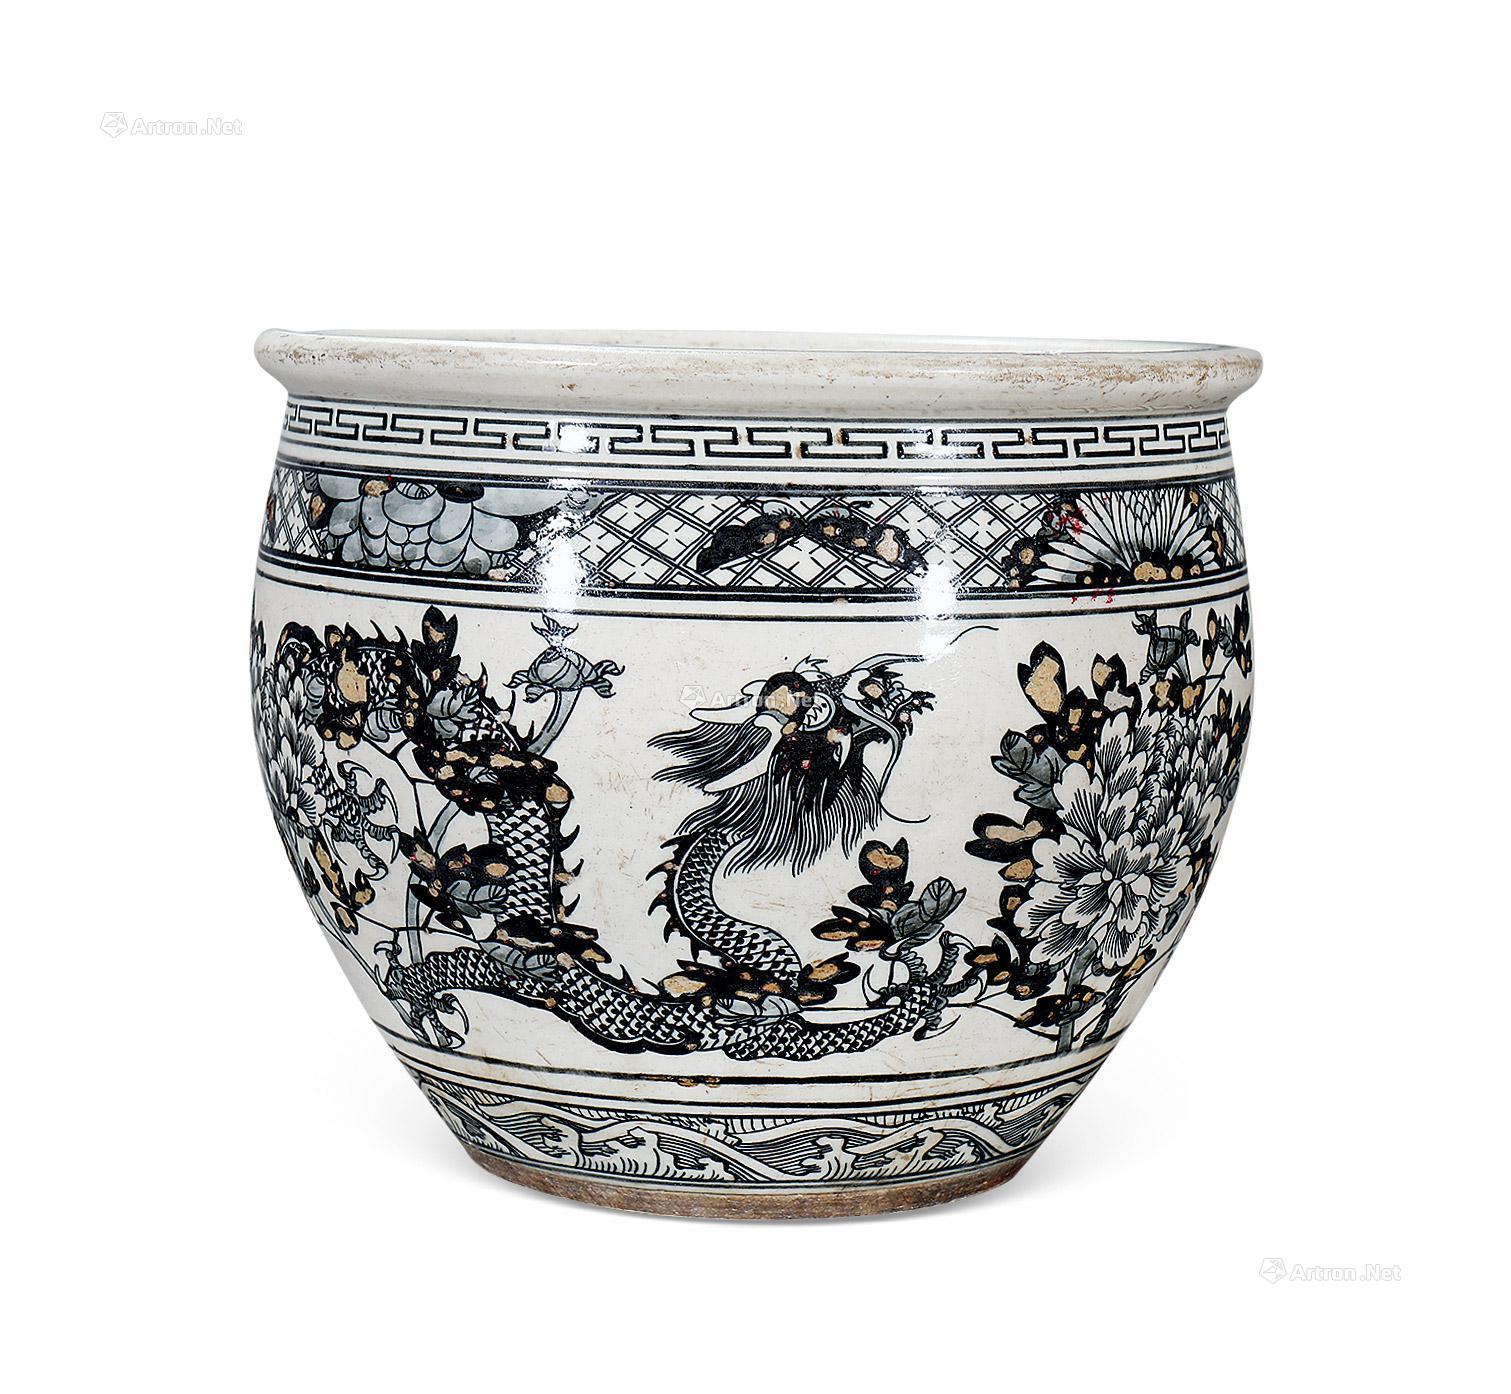 古代龙缸官窑瓷器为什么难成器大|陶瓷,瓷器鉴赏知识|样子收藏网,记录传统艺术品文化传承